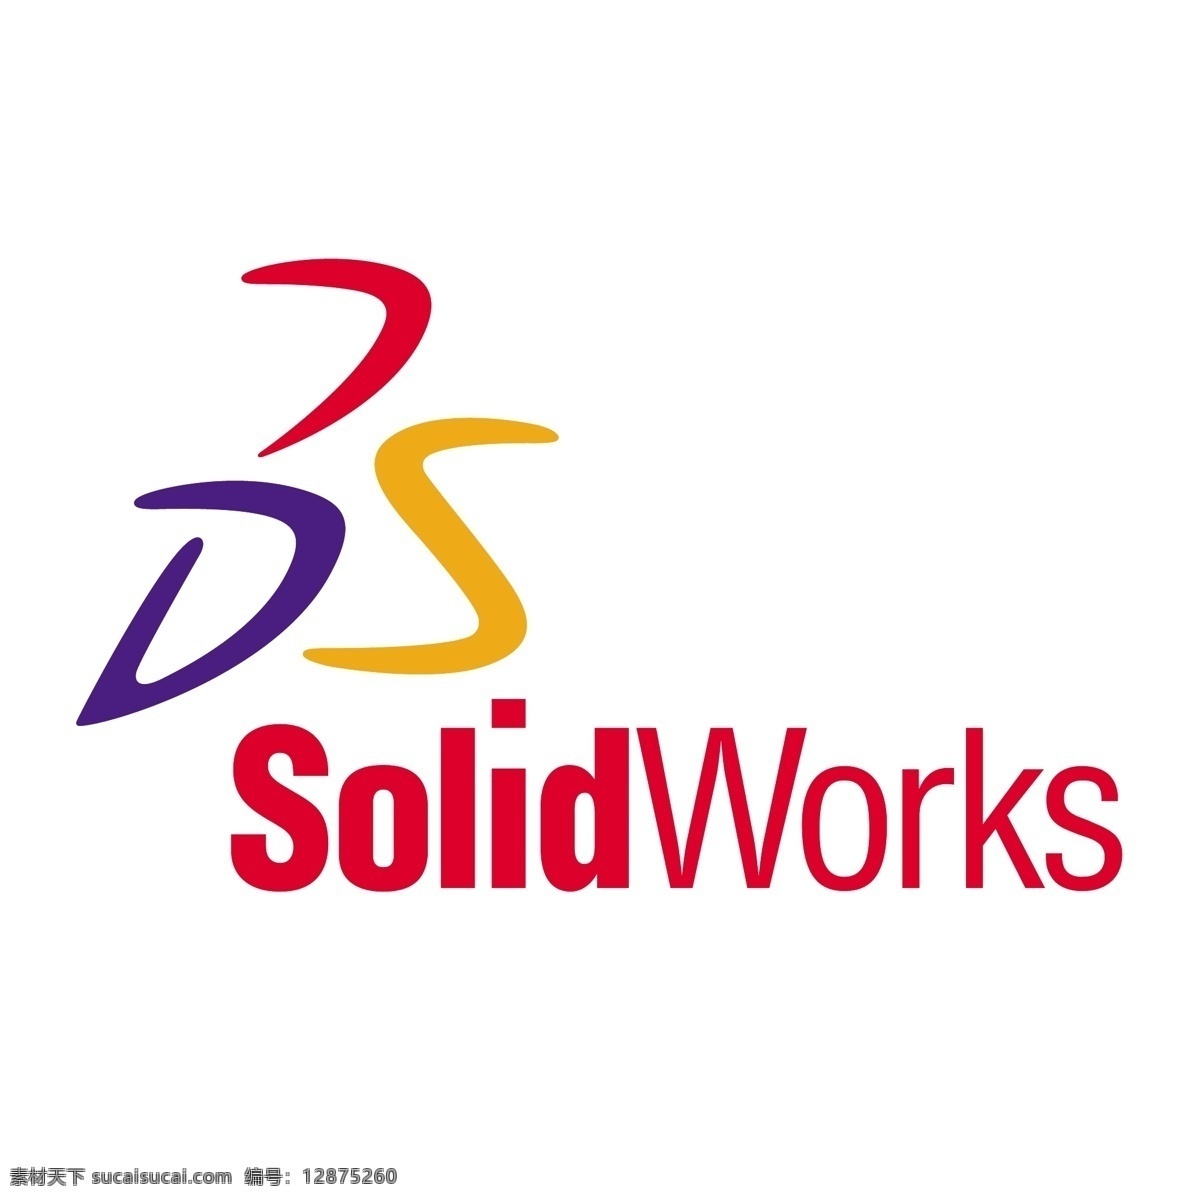 solidworks 矢量标志下载 免费矢量标识 商标 品牌标识 标识 矢量 免费 品牌 公司 白色